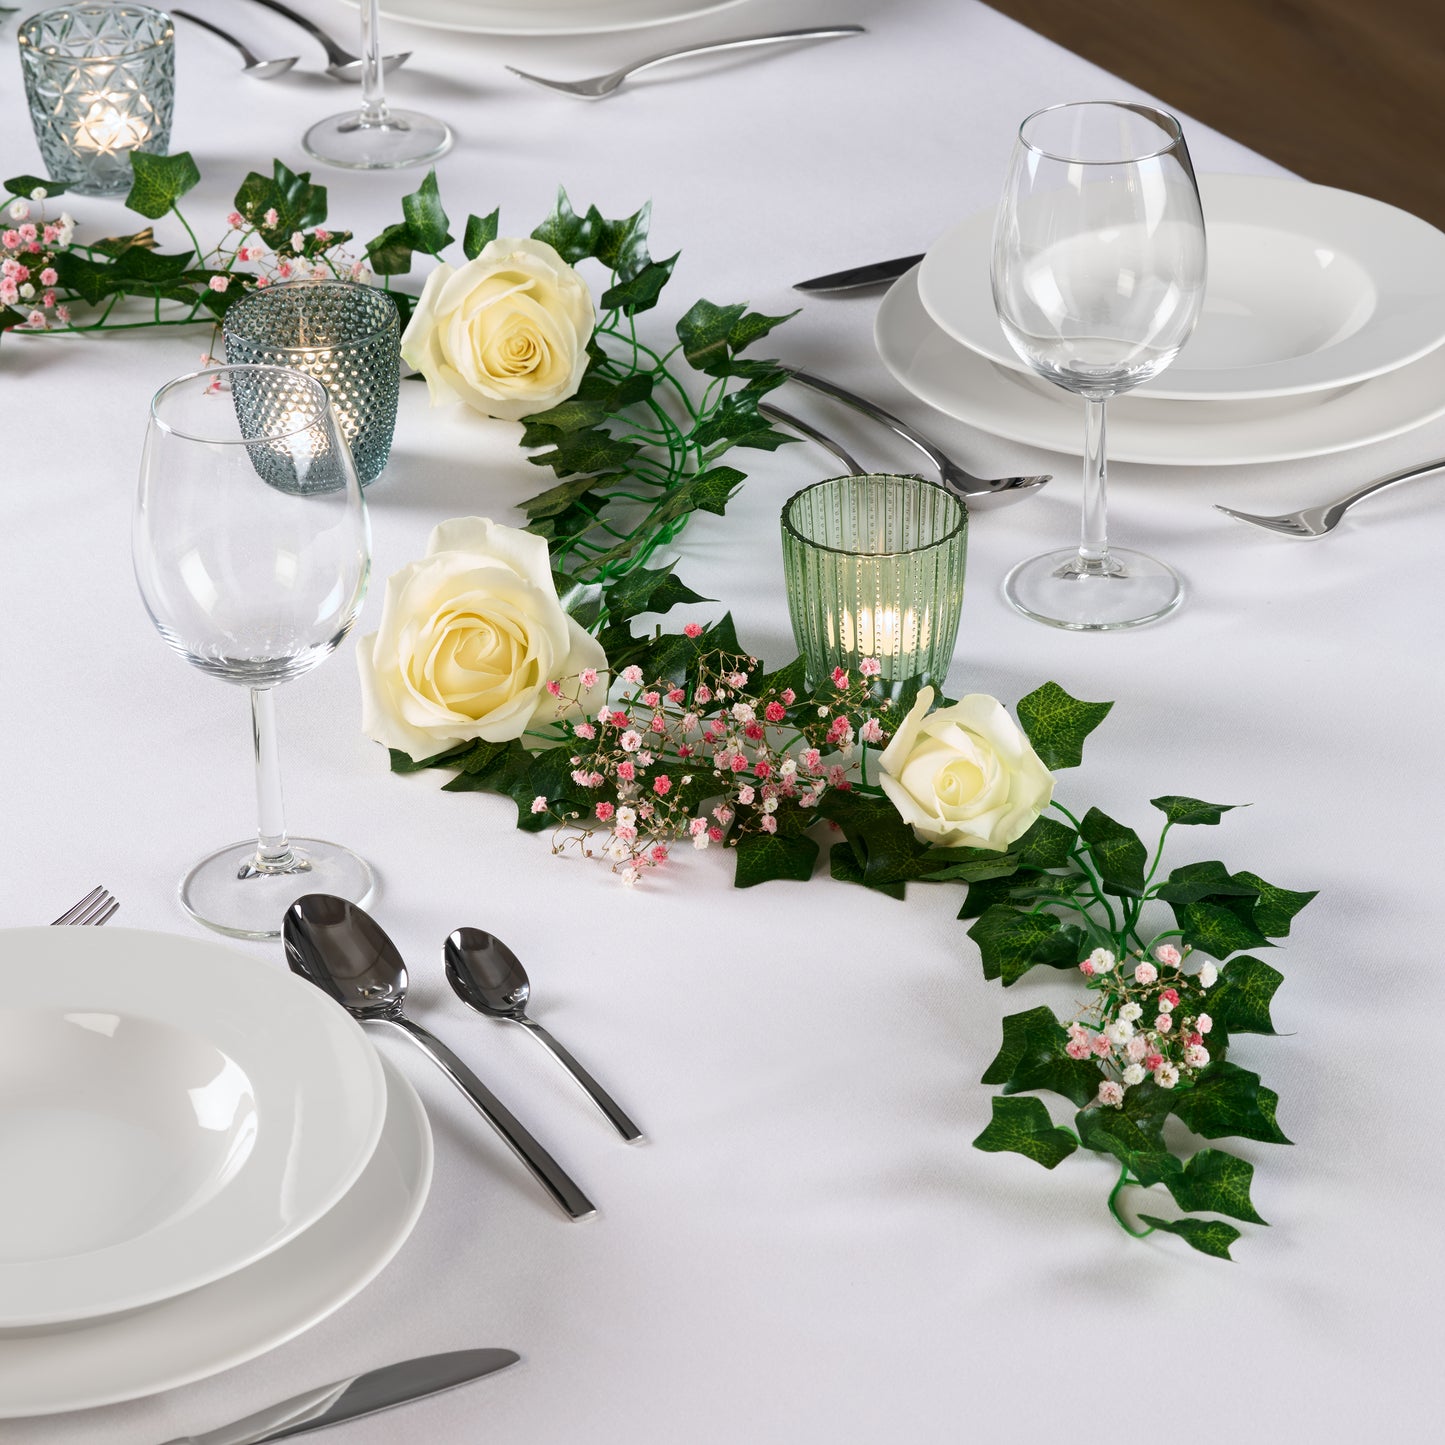 Tischdekoration mit grünen Pflanzen und weißen Rosen für ein Dinner-Setting.